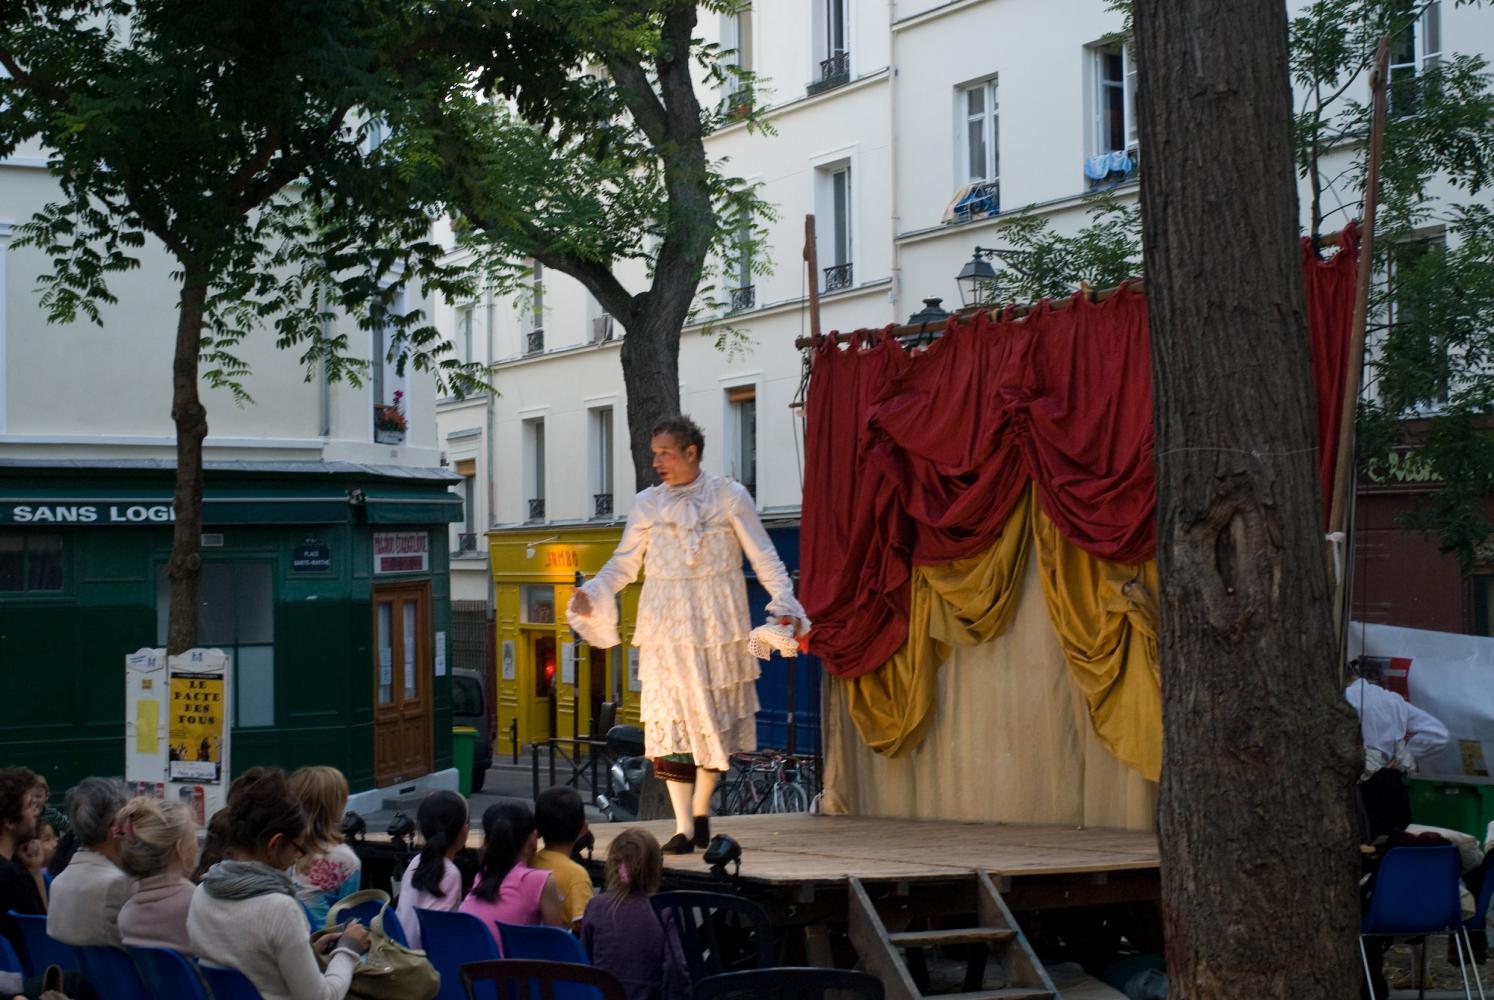 Un homme travesti vient de tomber le masque et explique les raisons de sa dissimulation. Paris, août 2010.